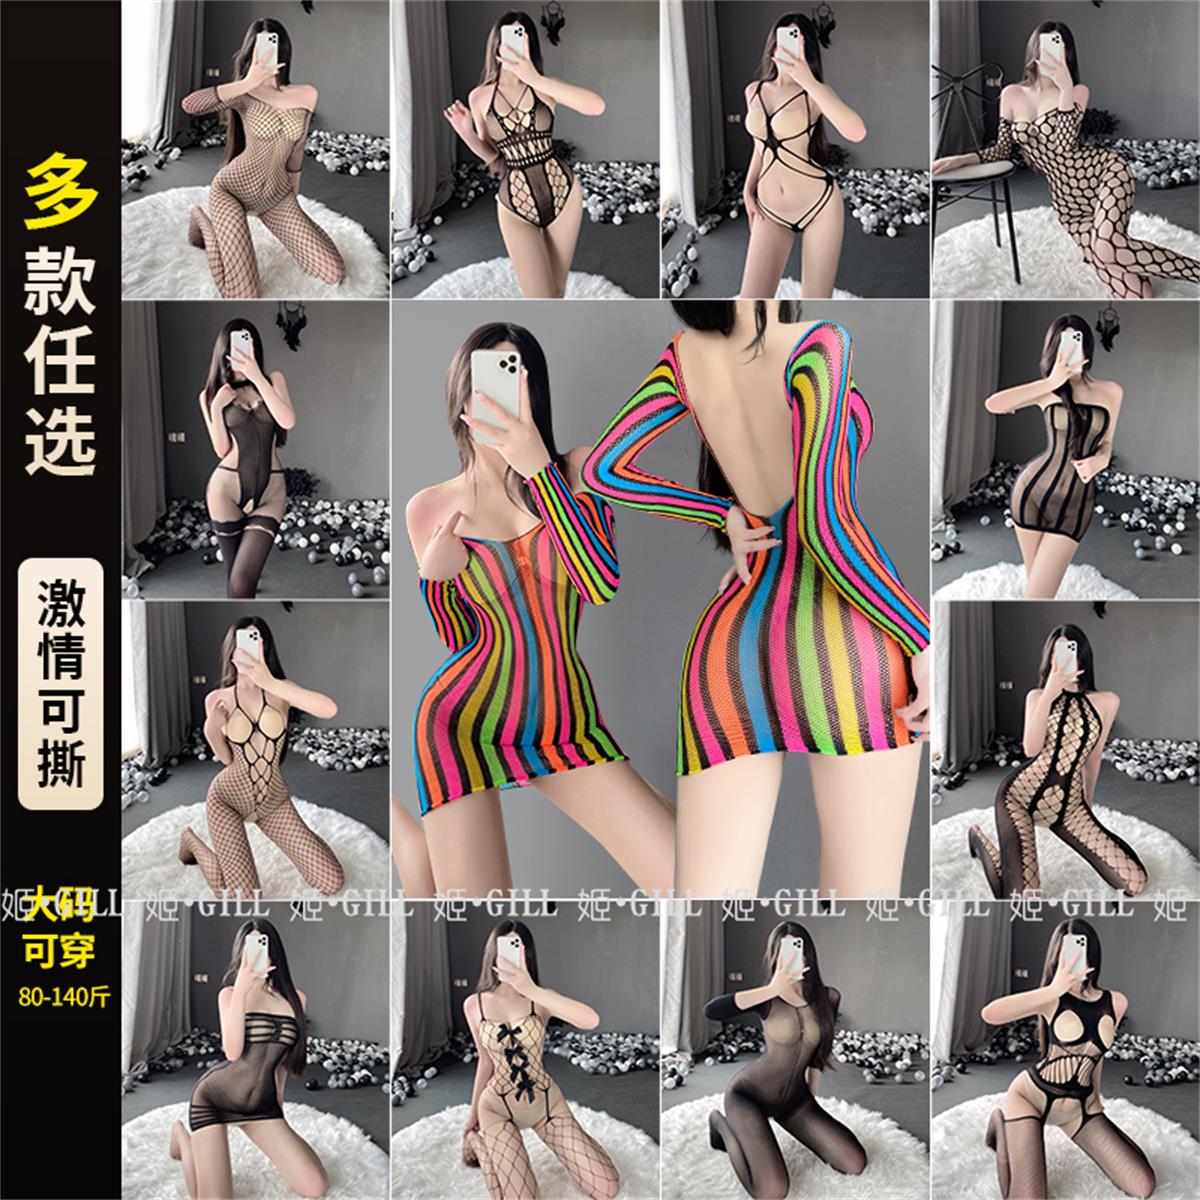 日本：性感睡衣镂空连身连体印花网衣黑丝新款内衣提花吊带丝袜 - 图2